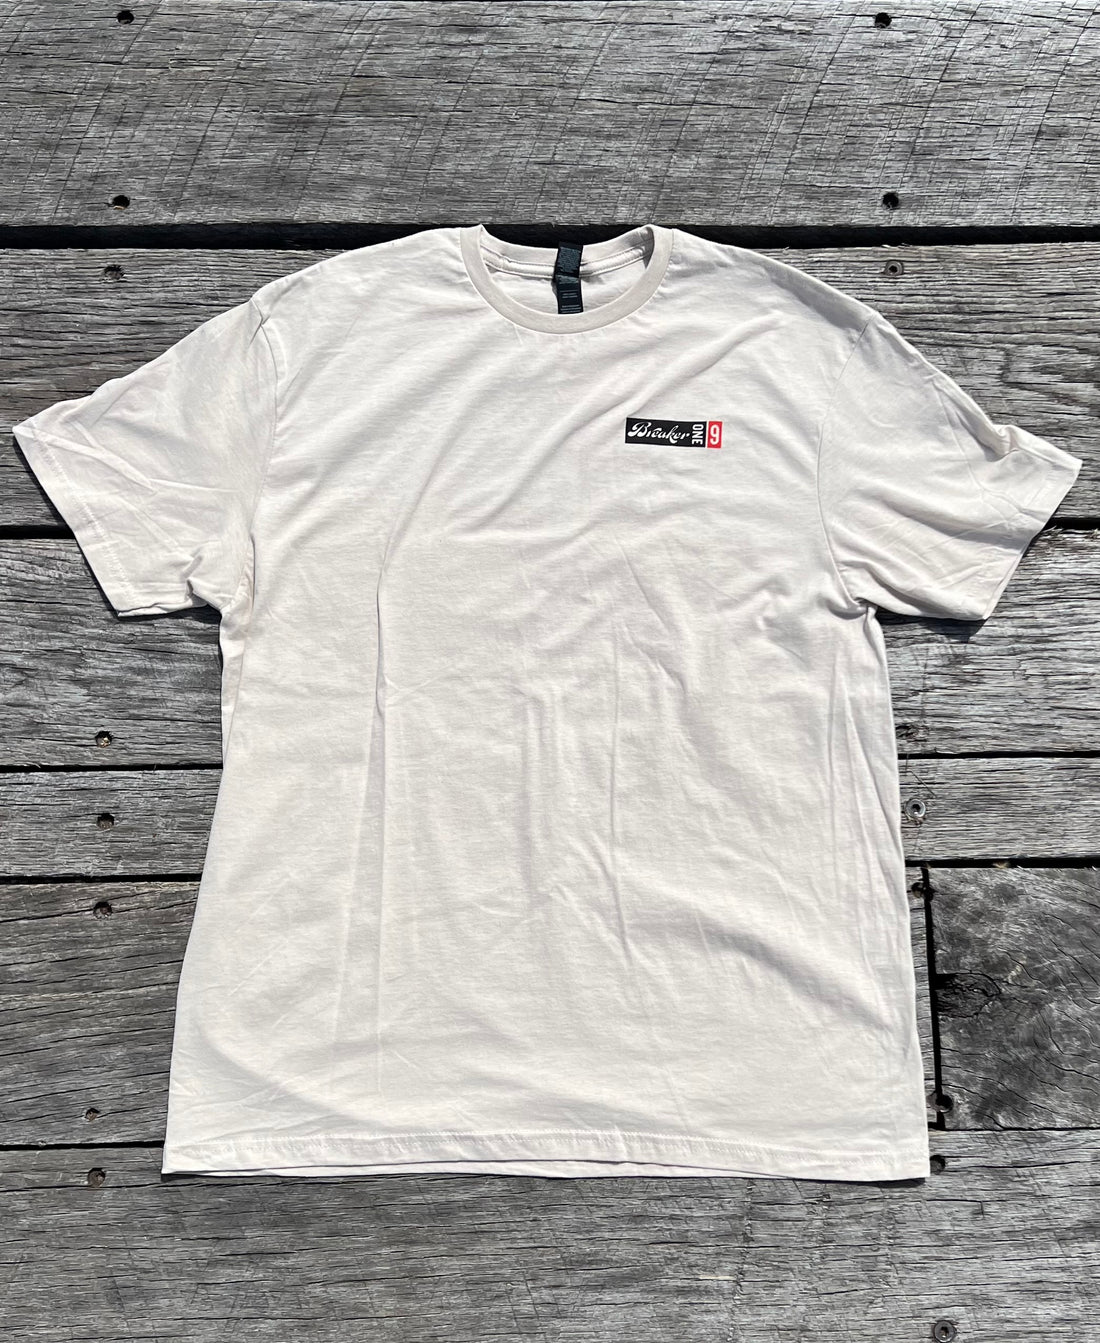 BreakerOne9 - USA Trucker Flag T-shirt - Sand